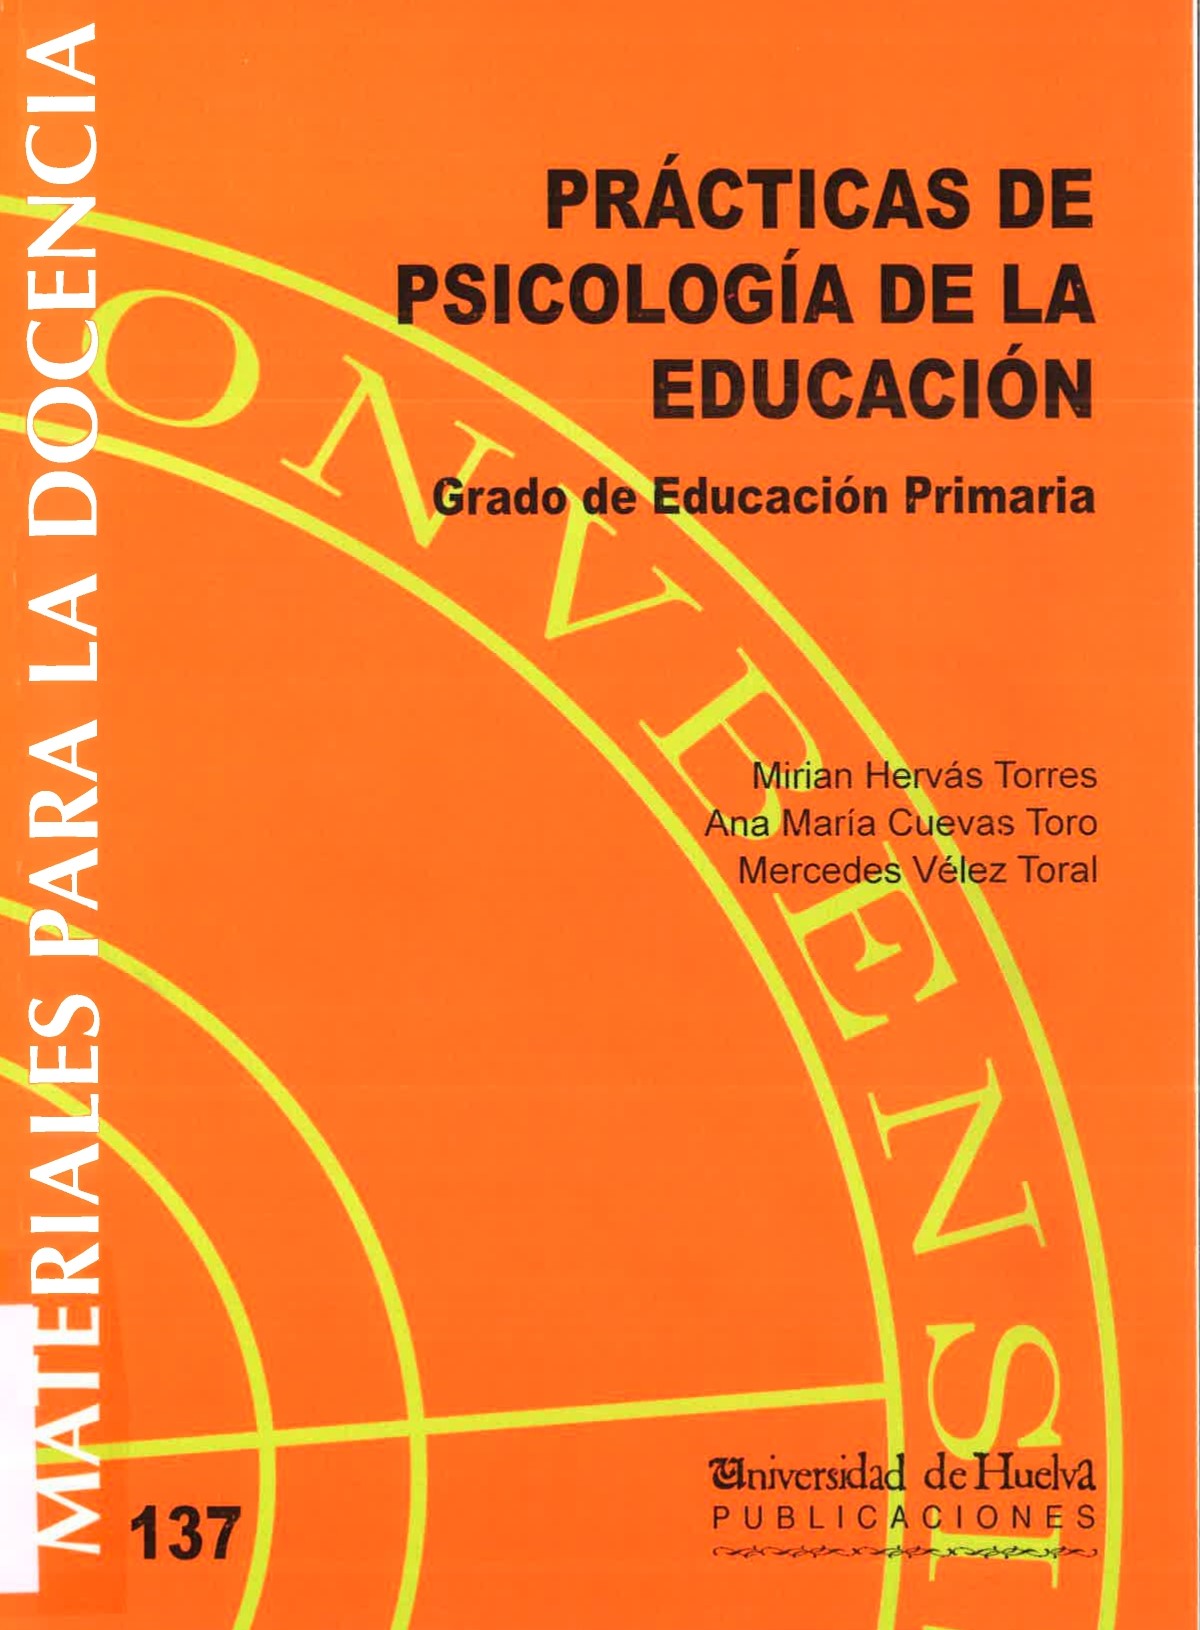 Imagen de portada del libro Práctica de Psicología de la Educación